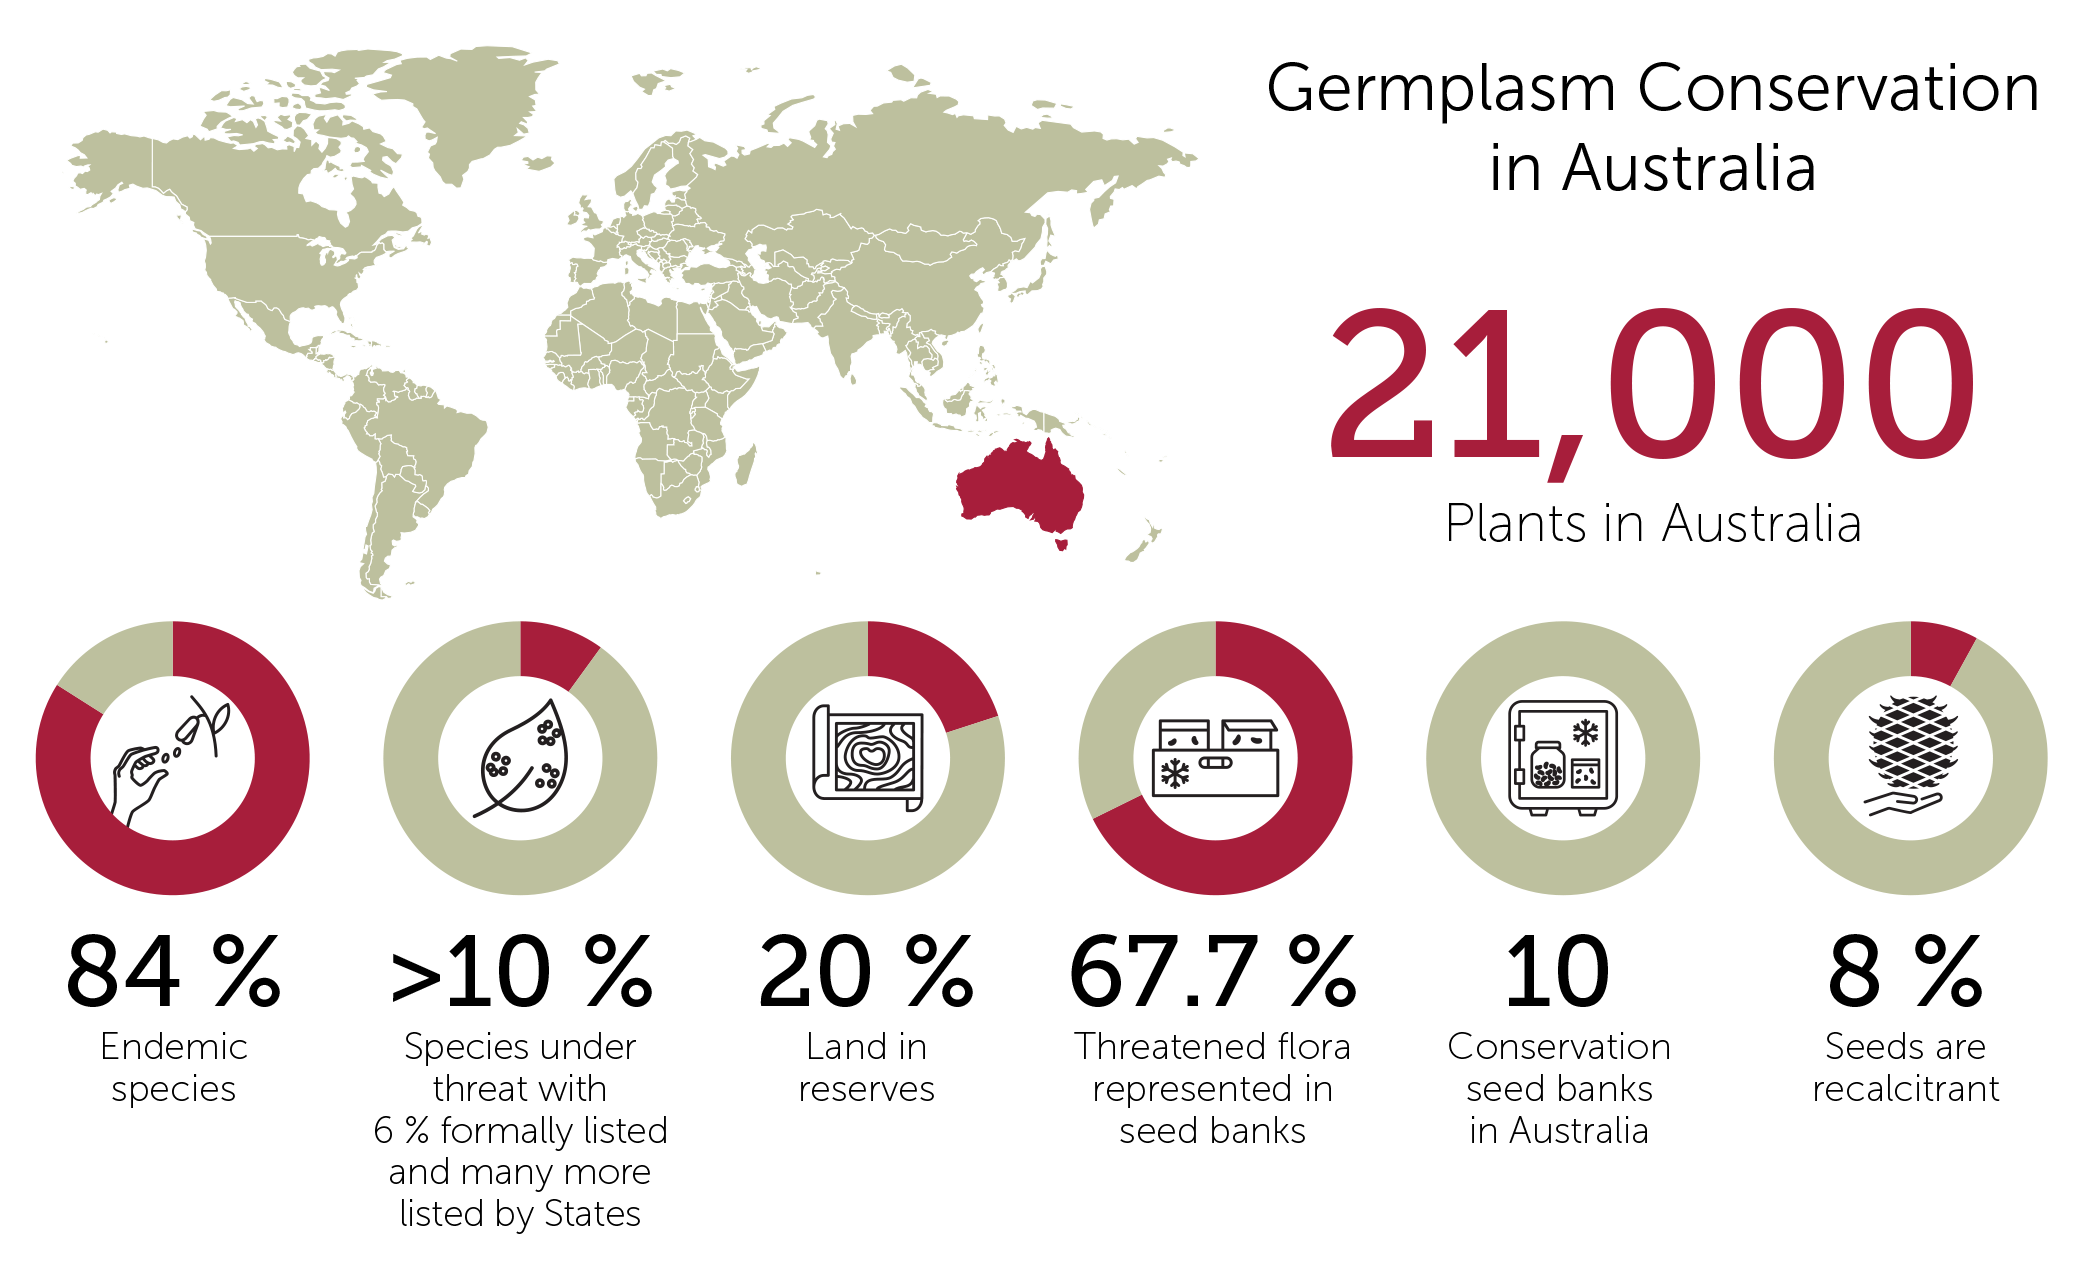 Germplasm conservation in Australia schematic